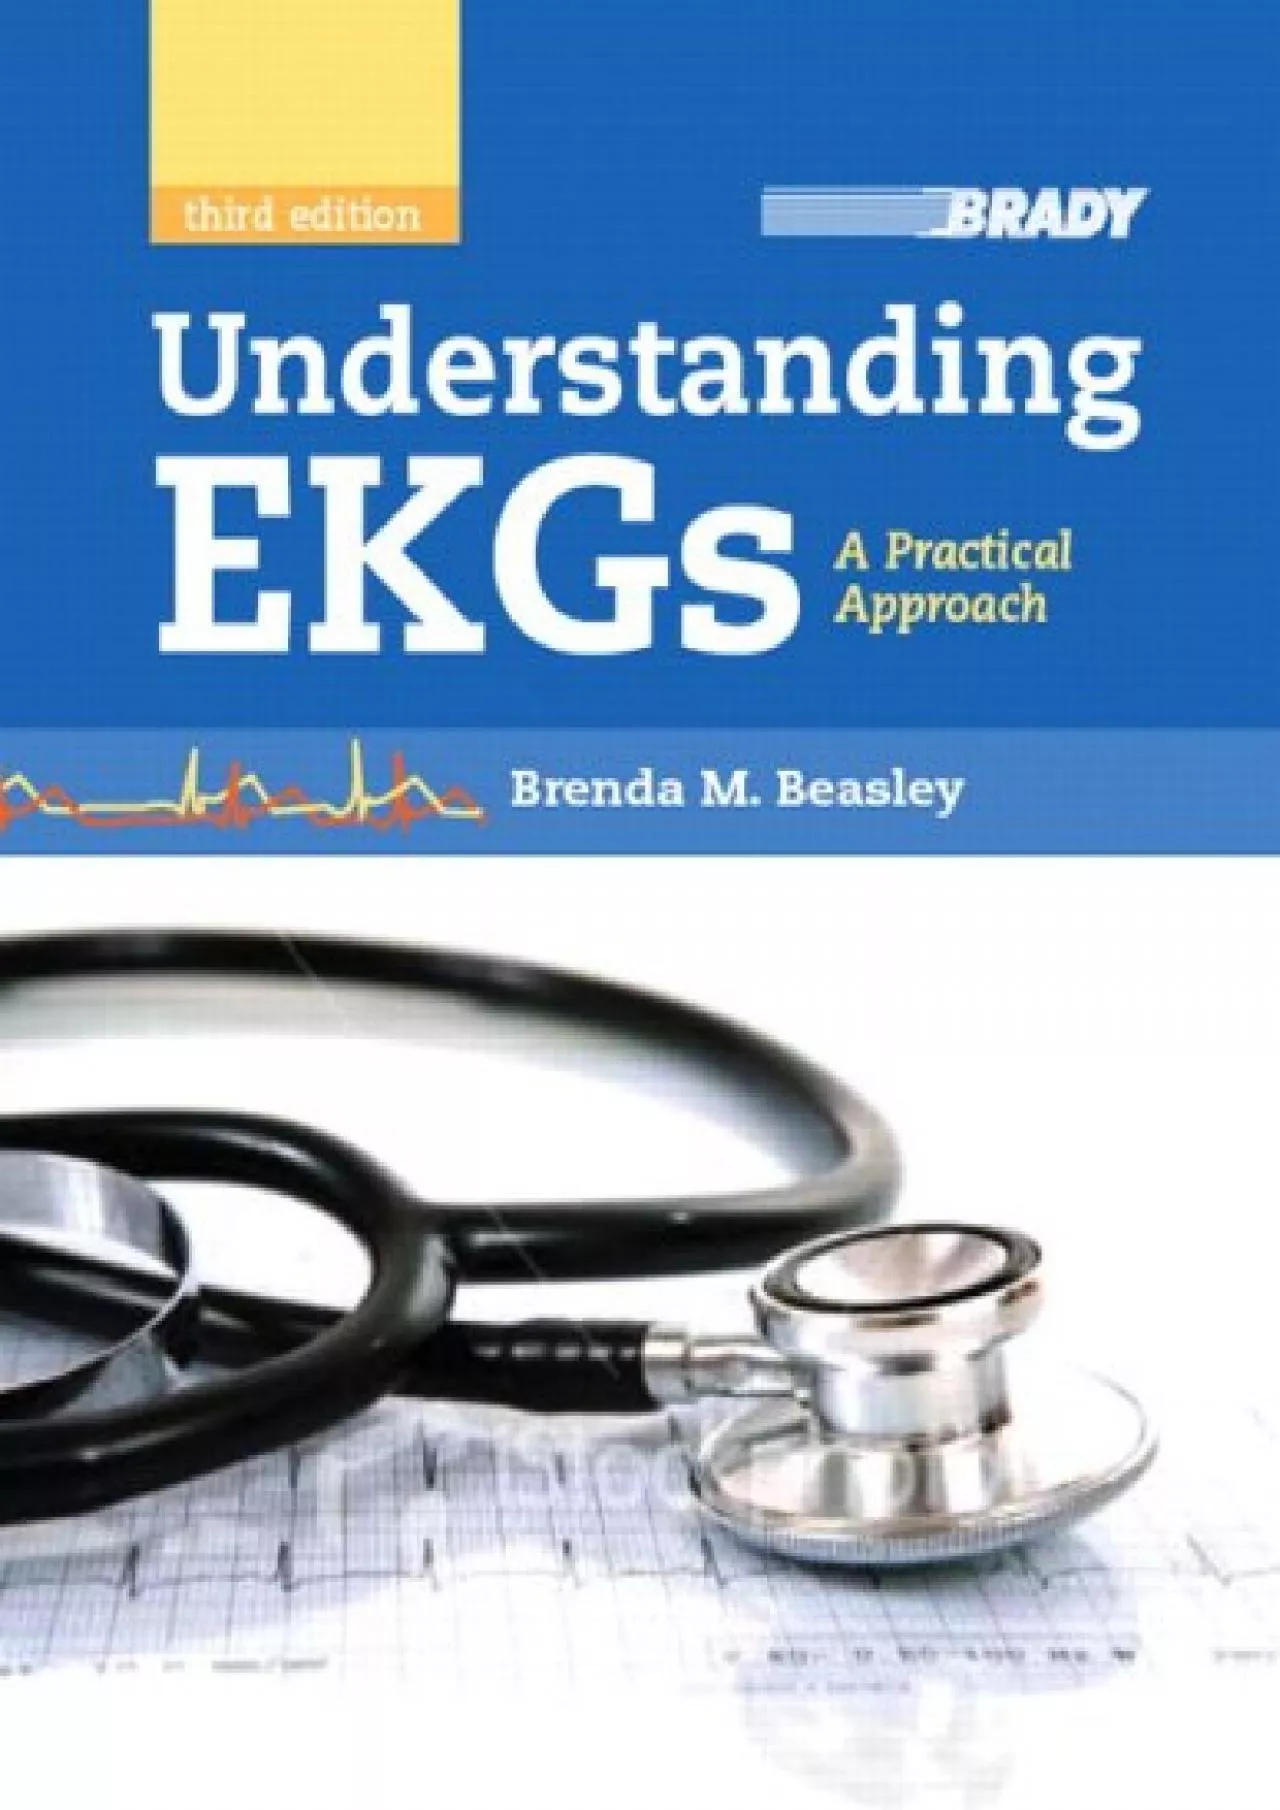 (BOOK)-Understanding EKGs: A Practical Approach